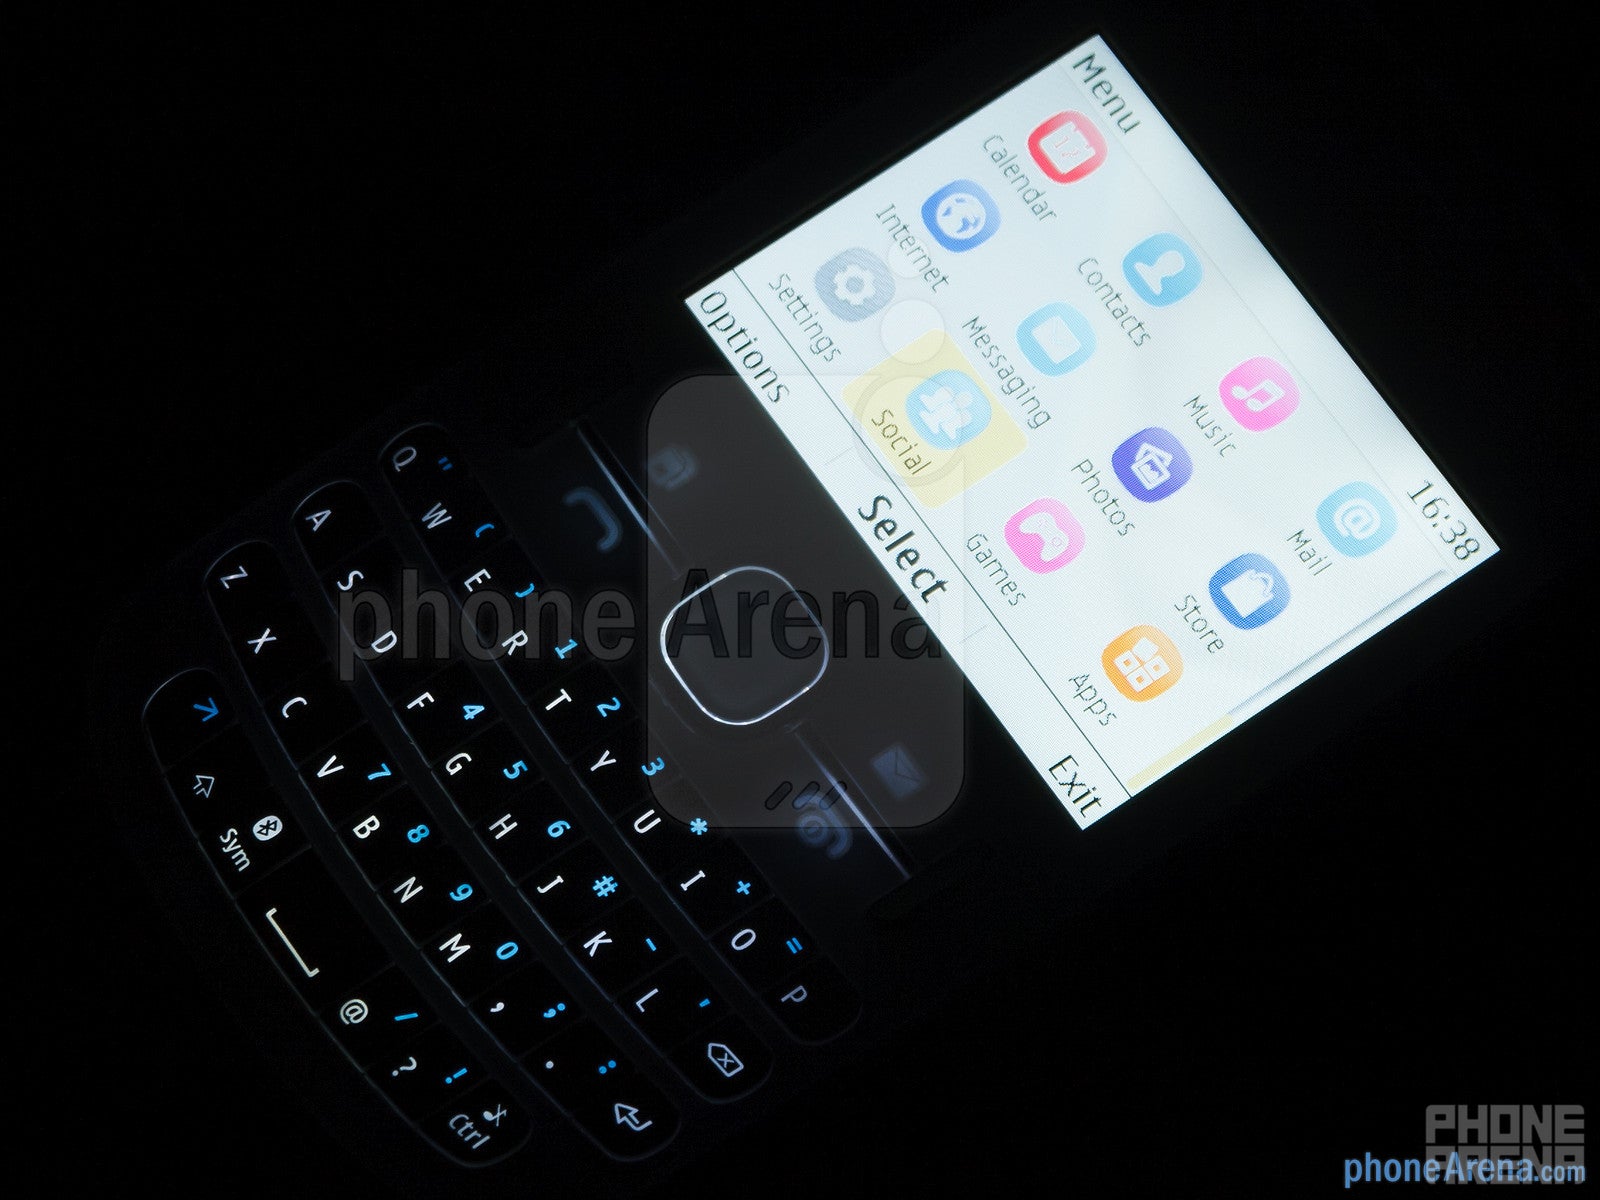 Nokia Asha 200 Review